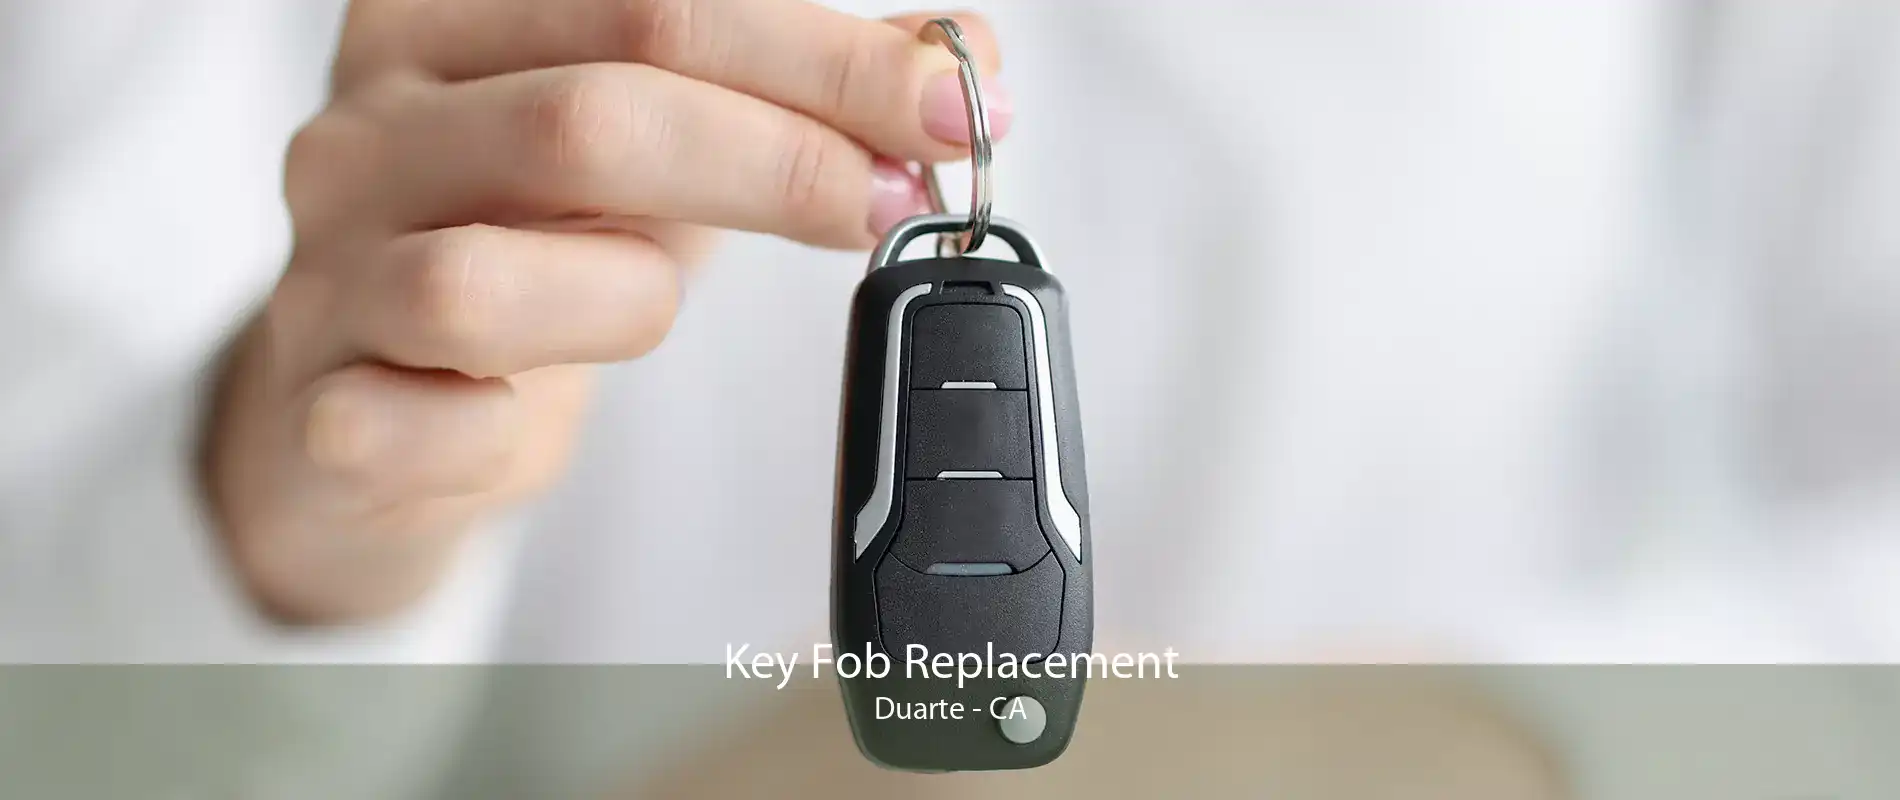 Key Fob Replacement Duarte - CA